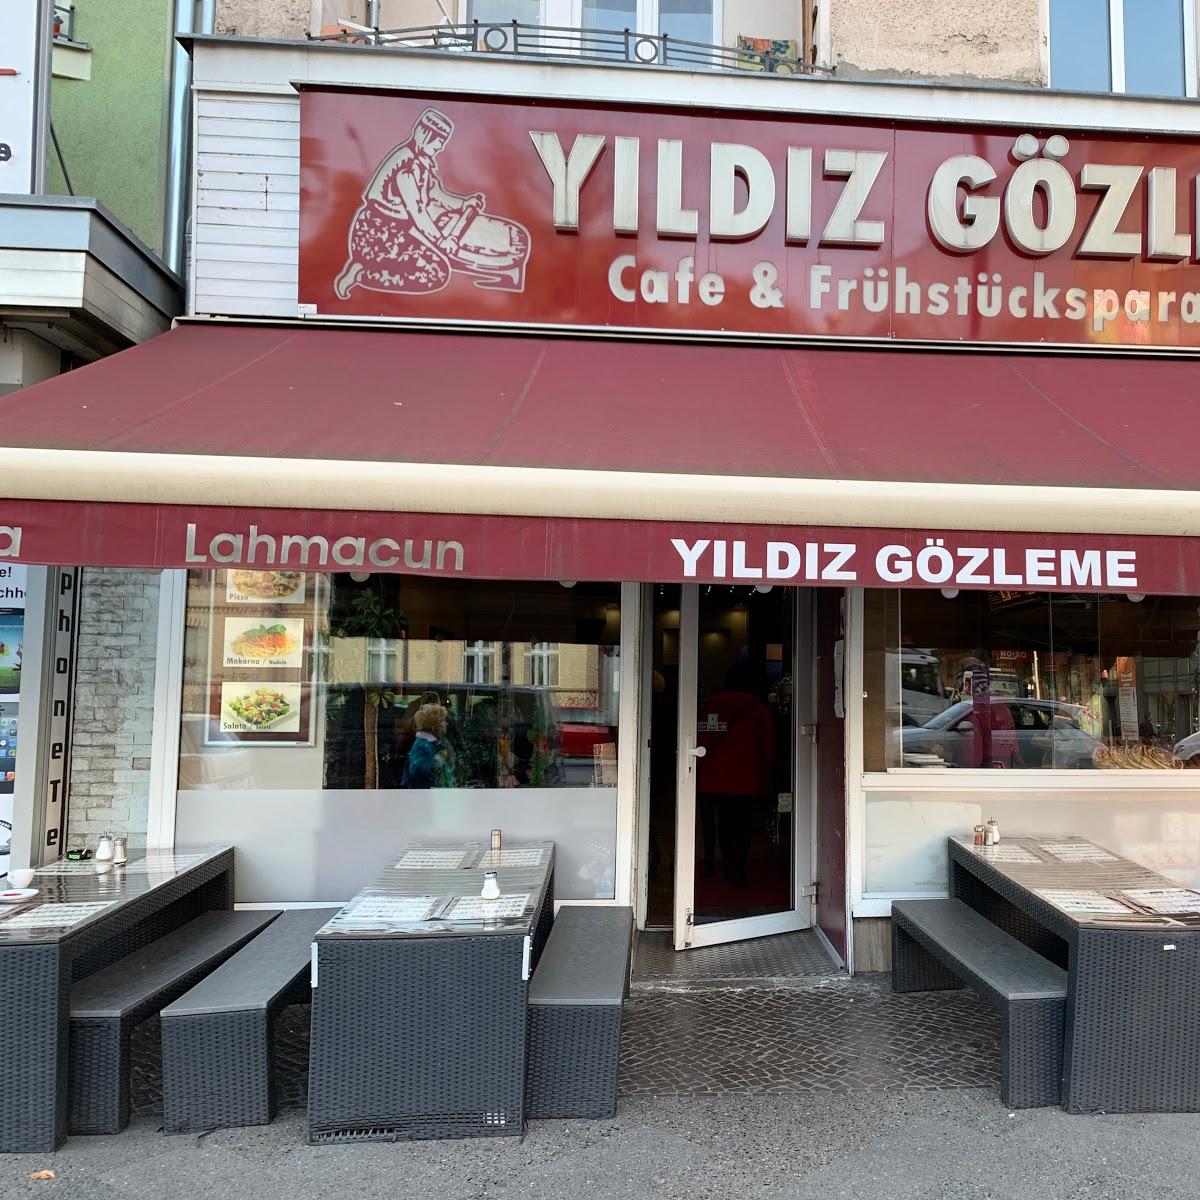 Restaurant "Yildiz Cafe & Gözleme" in Berlin